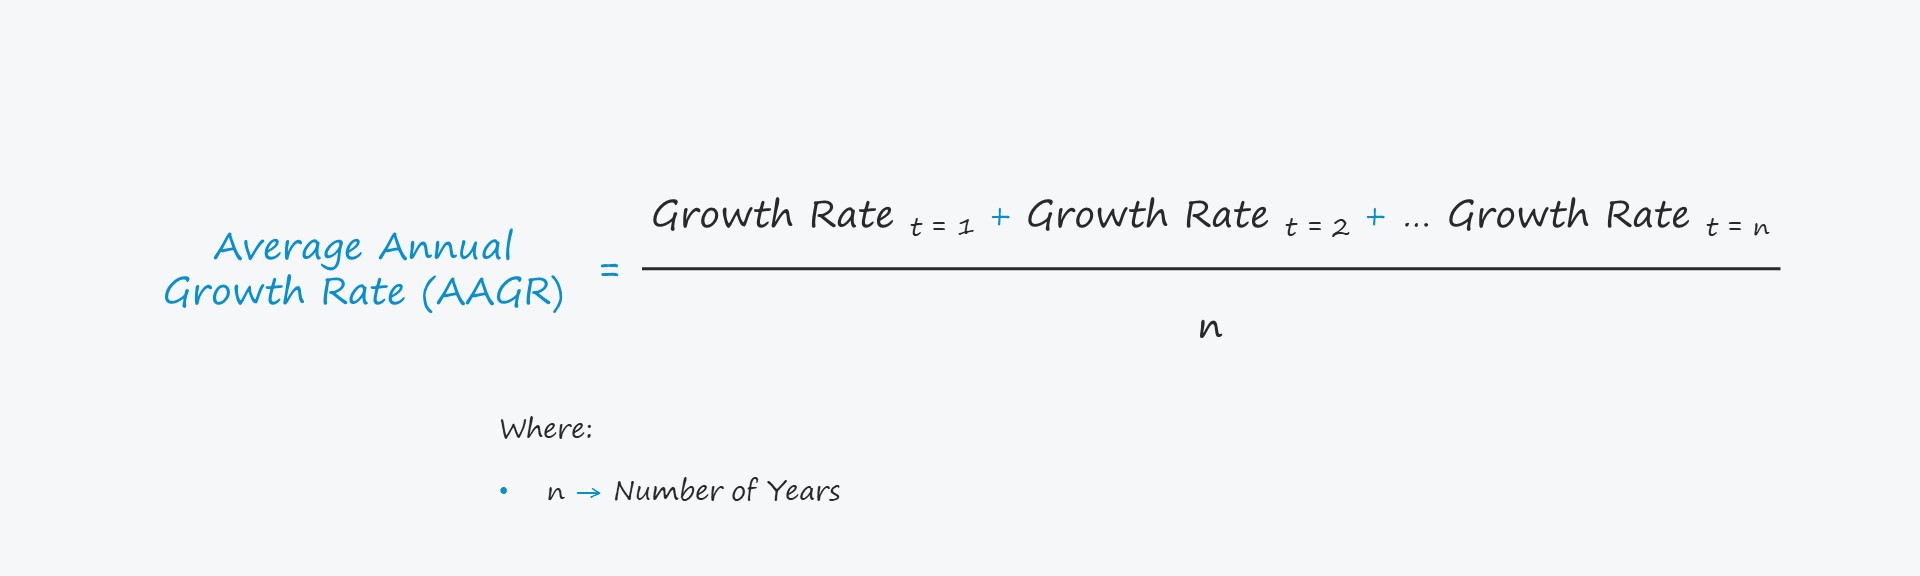 Tasa de crecimiento anual promedio (AAGR)